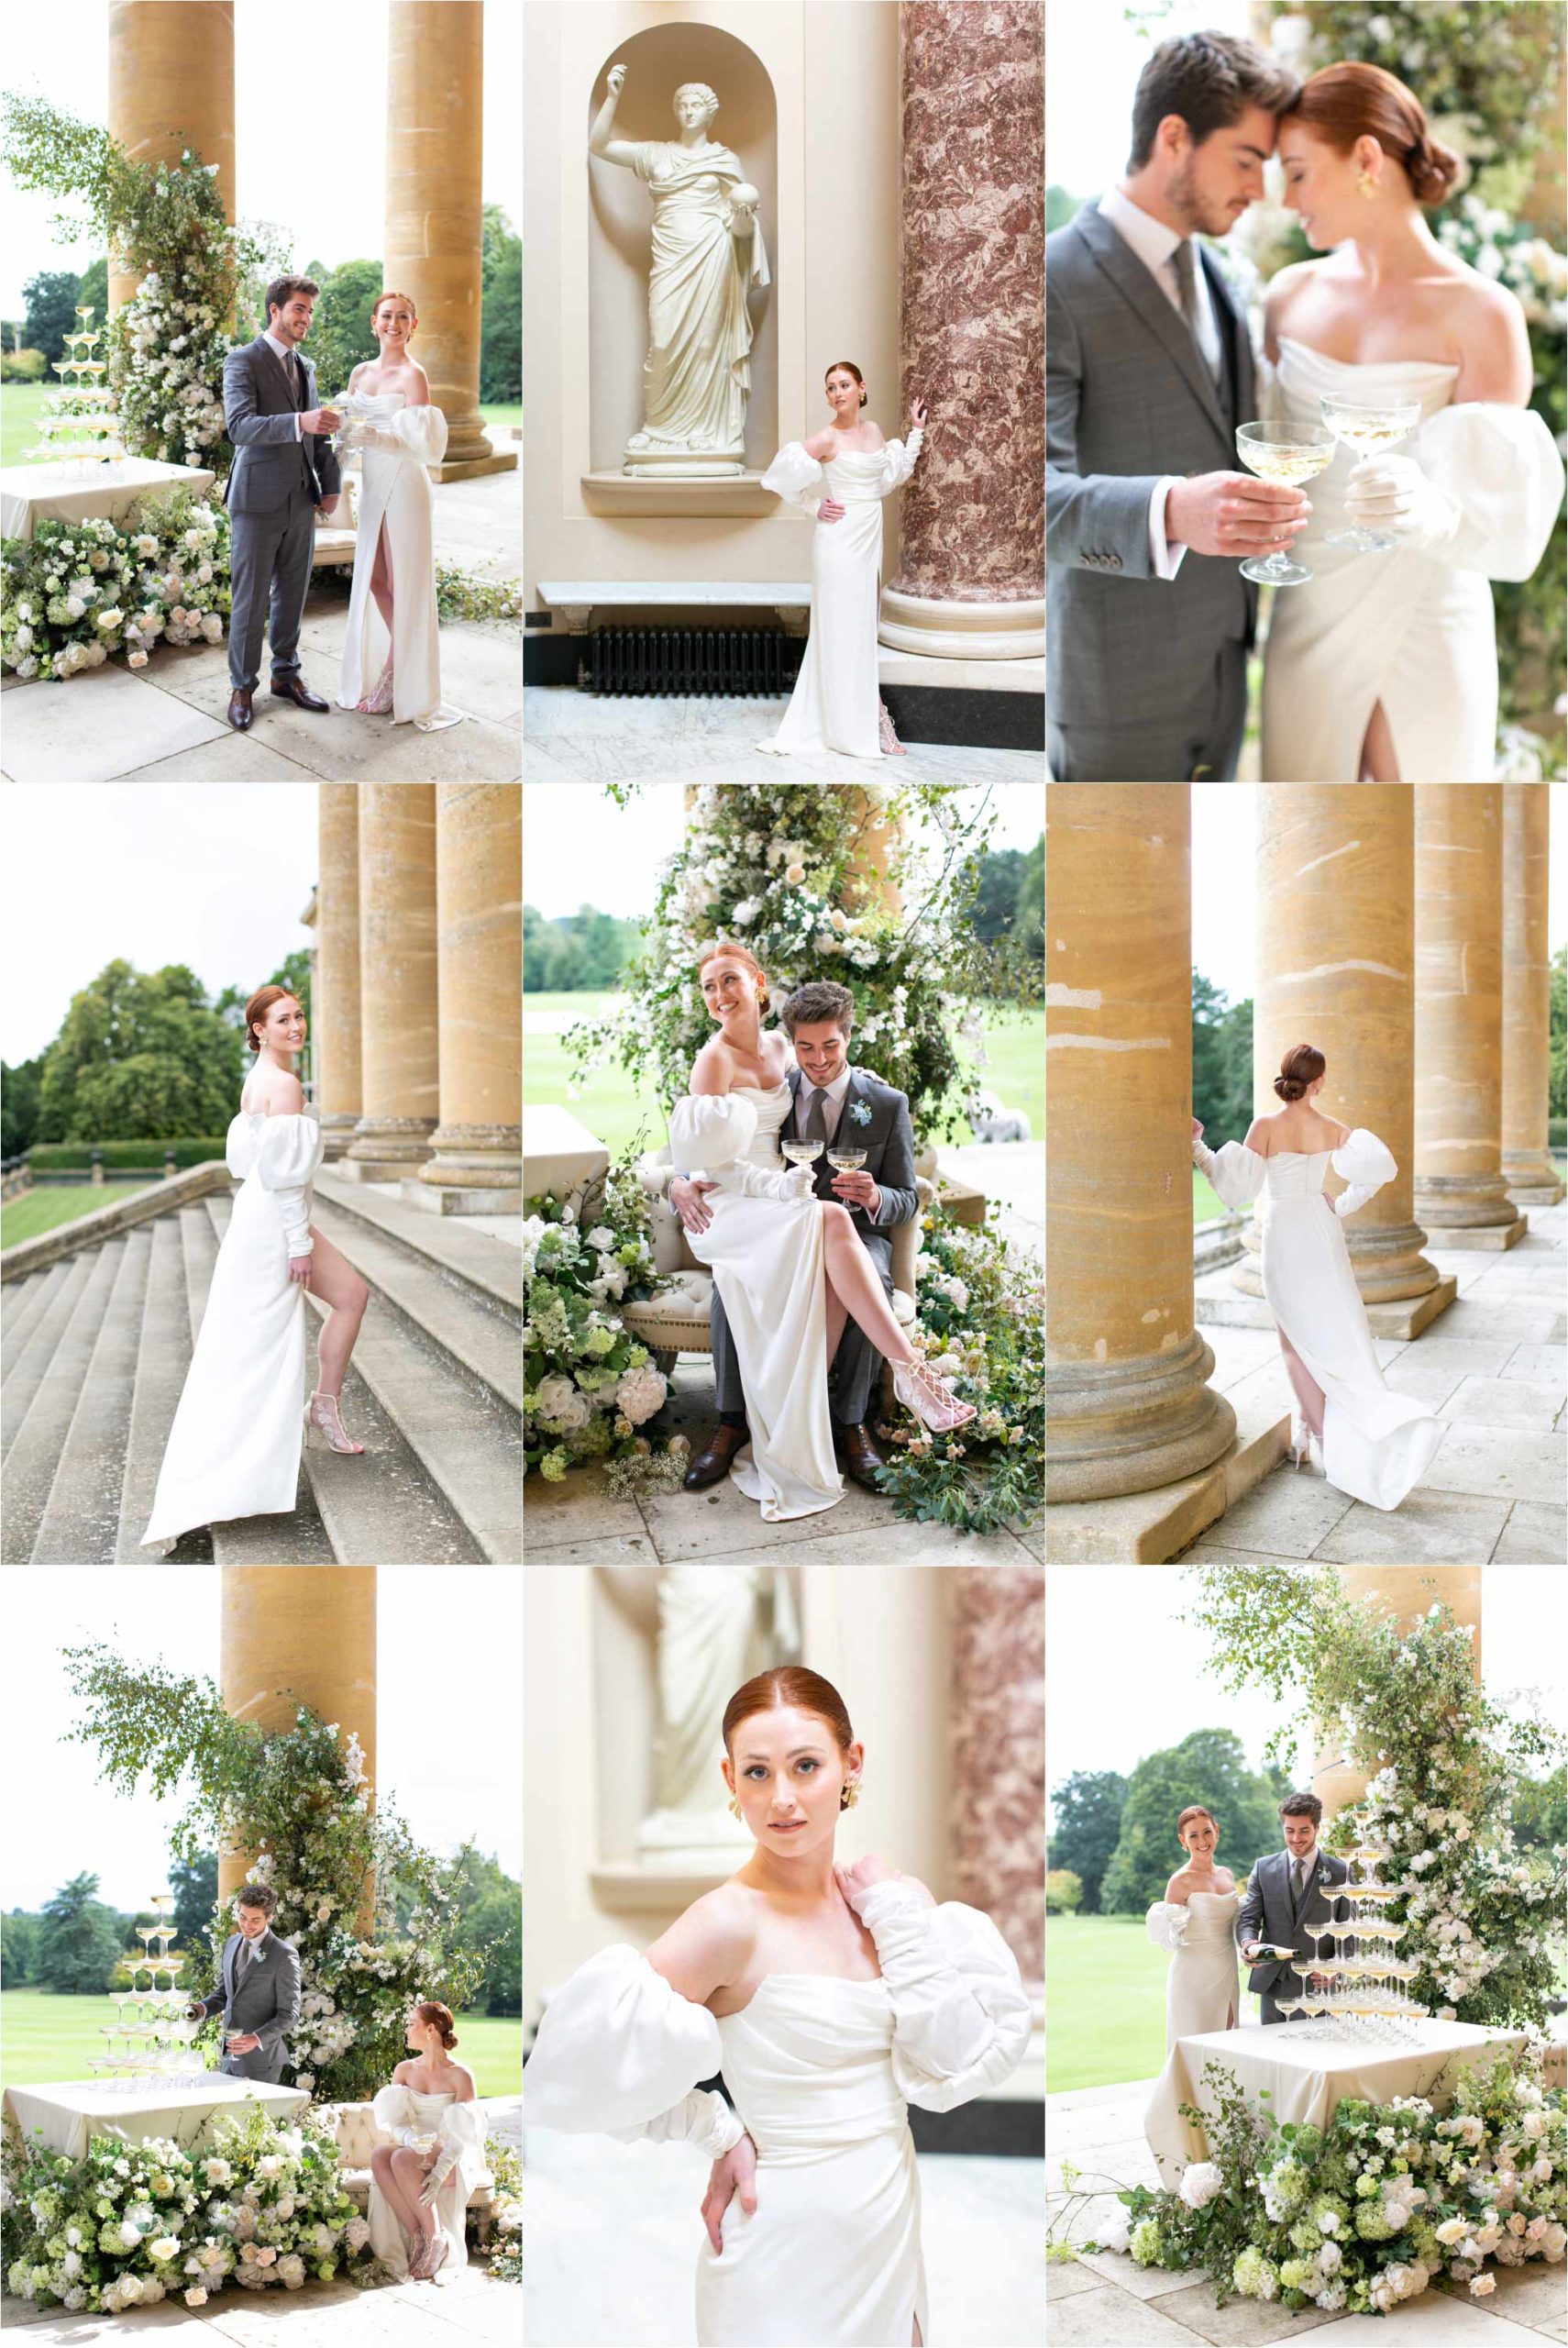 London luxury wedding photographer